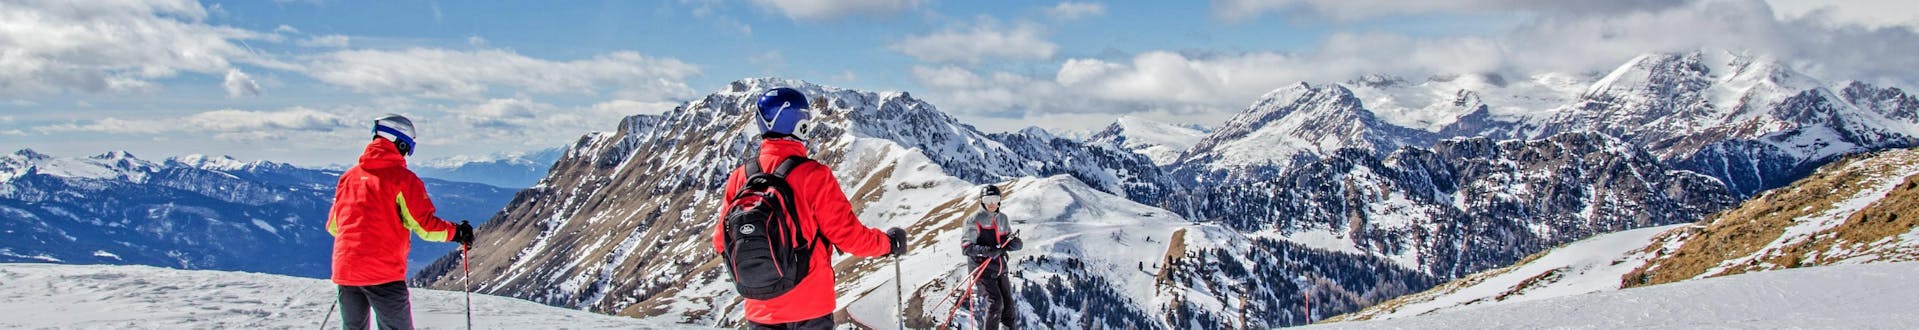 Skifahrer genießen das atemberaubende Panorama des Val di Fiemme, wo die örtlichen Skischulen ihre Skikurse anbieten.